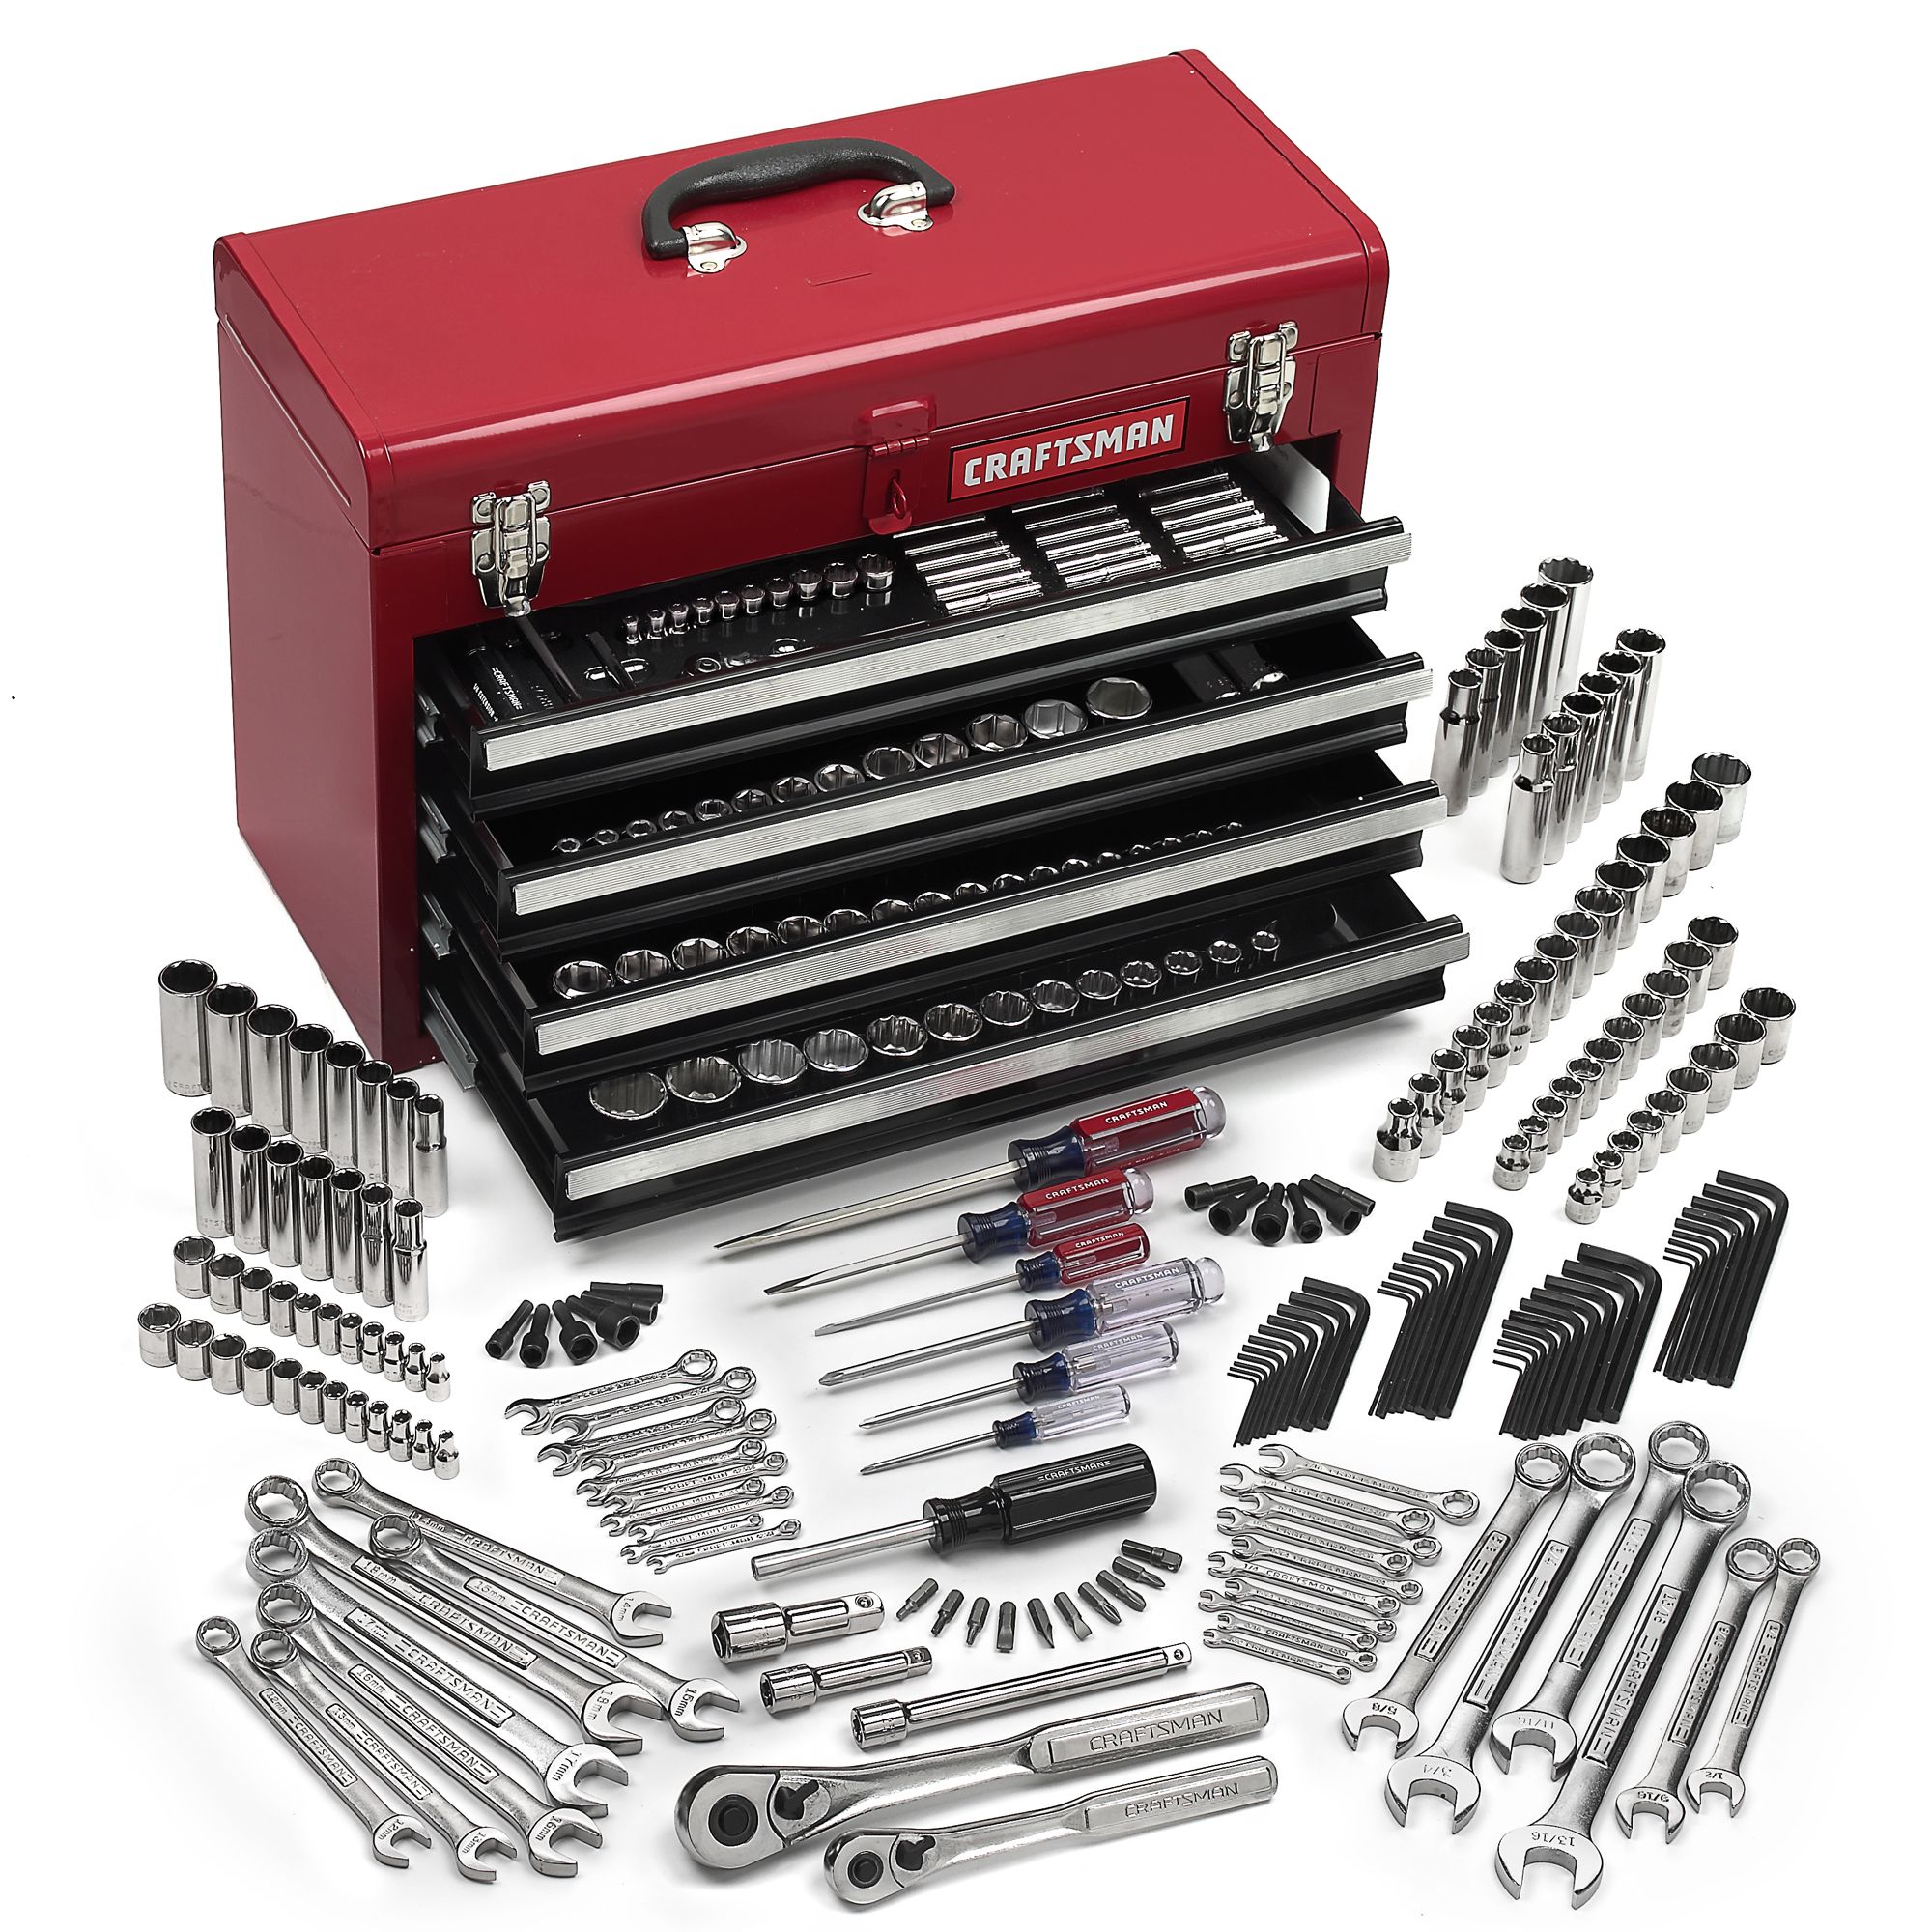 Tools производитель. Craftsman 100 PC Mechanics Tool Set. Набор инструментов 13m04 Toolbox. Набор головок фирма Ombra 69pc Mechanic Tool Set. Набор инструментов Tool-Wrap 1212505.